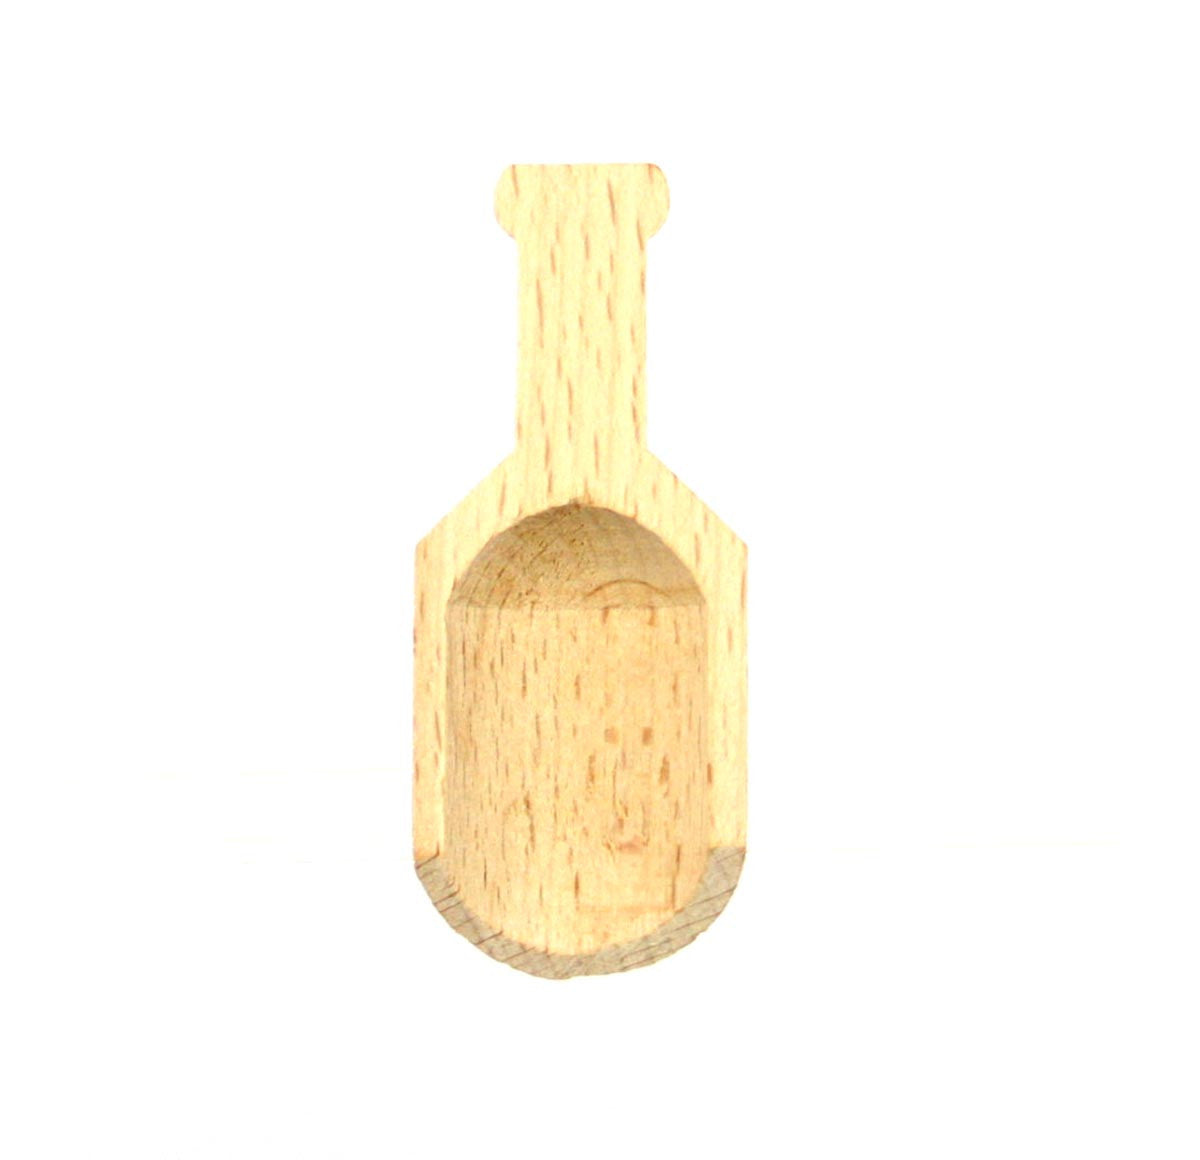 Wooden Scoop for Salts